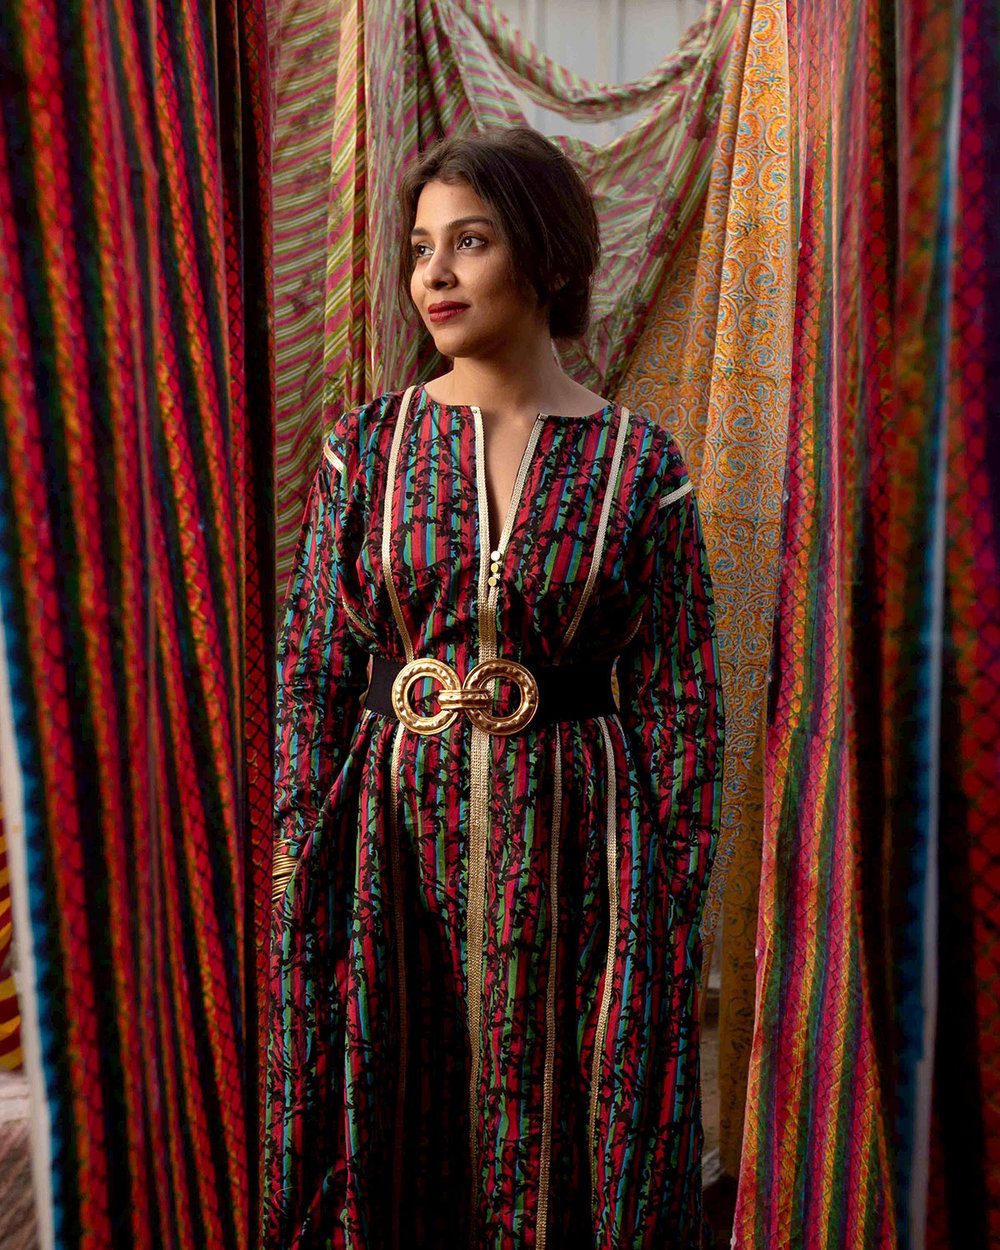 Shaivyya Gupta stands among drying sheets of block-printed textiles.